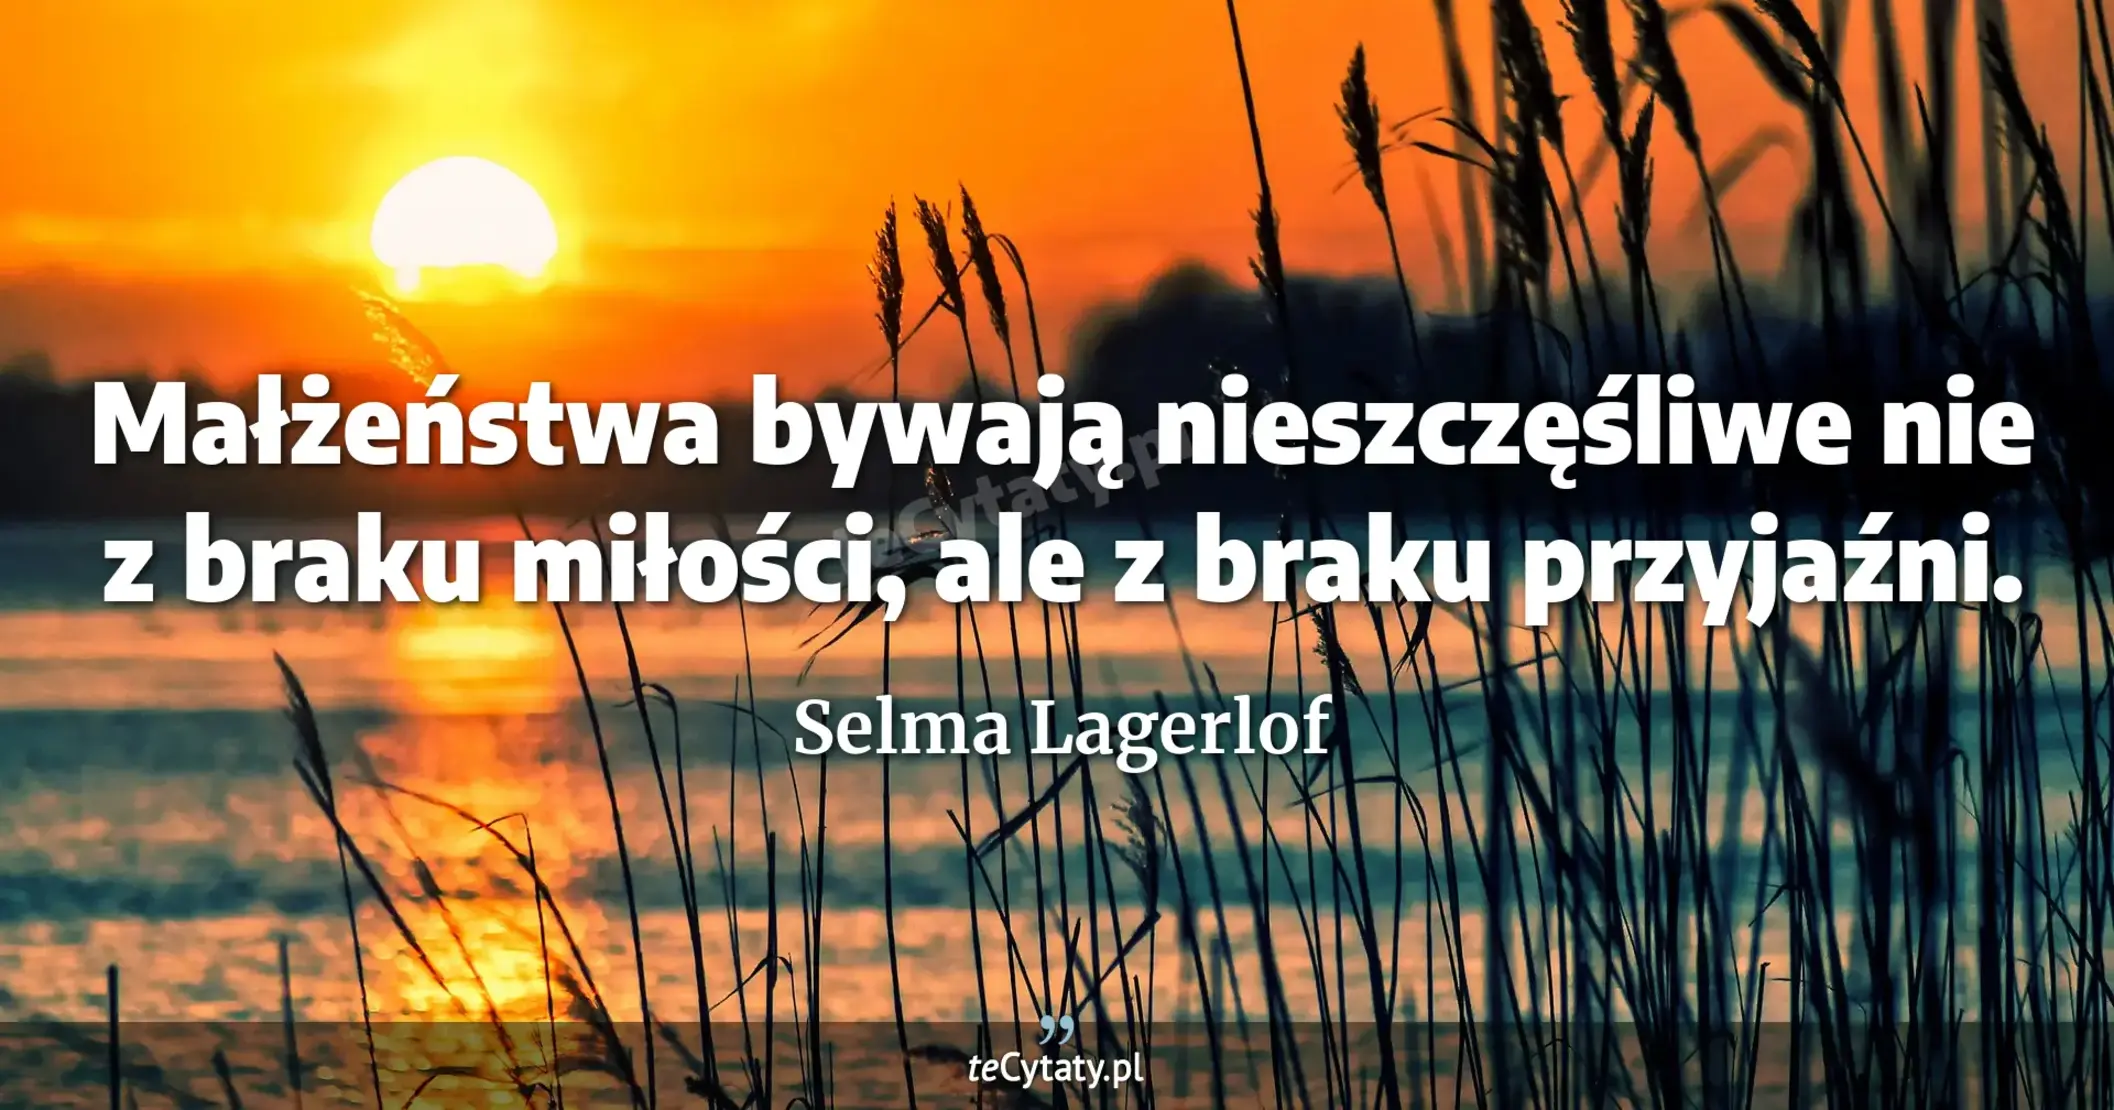 Małżeństwa bywają nieszczęśliwe nie z braku miłości, ale z braku przyjaźni. - Selma Lagerlof